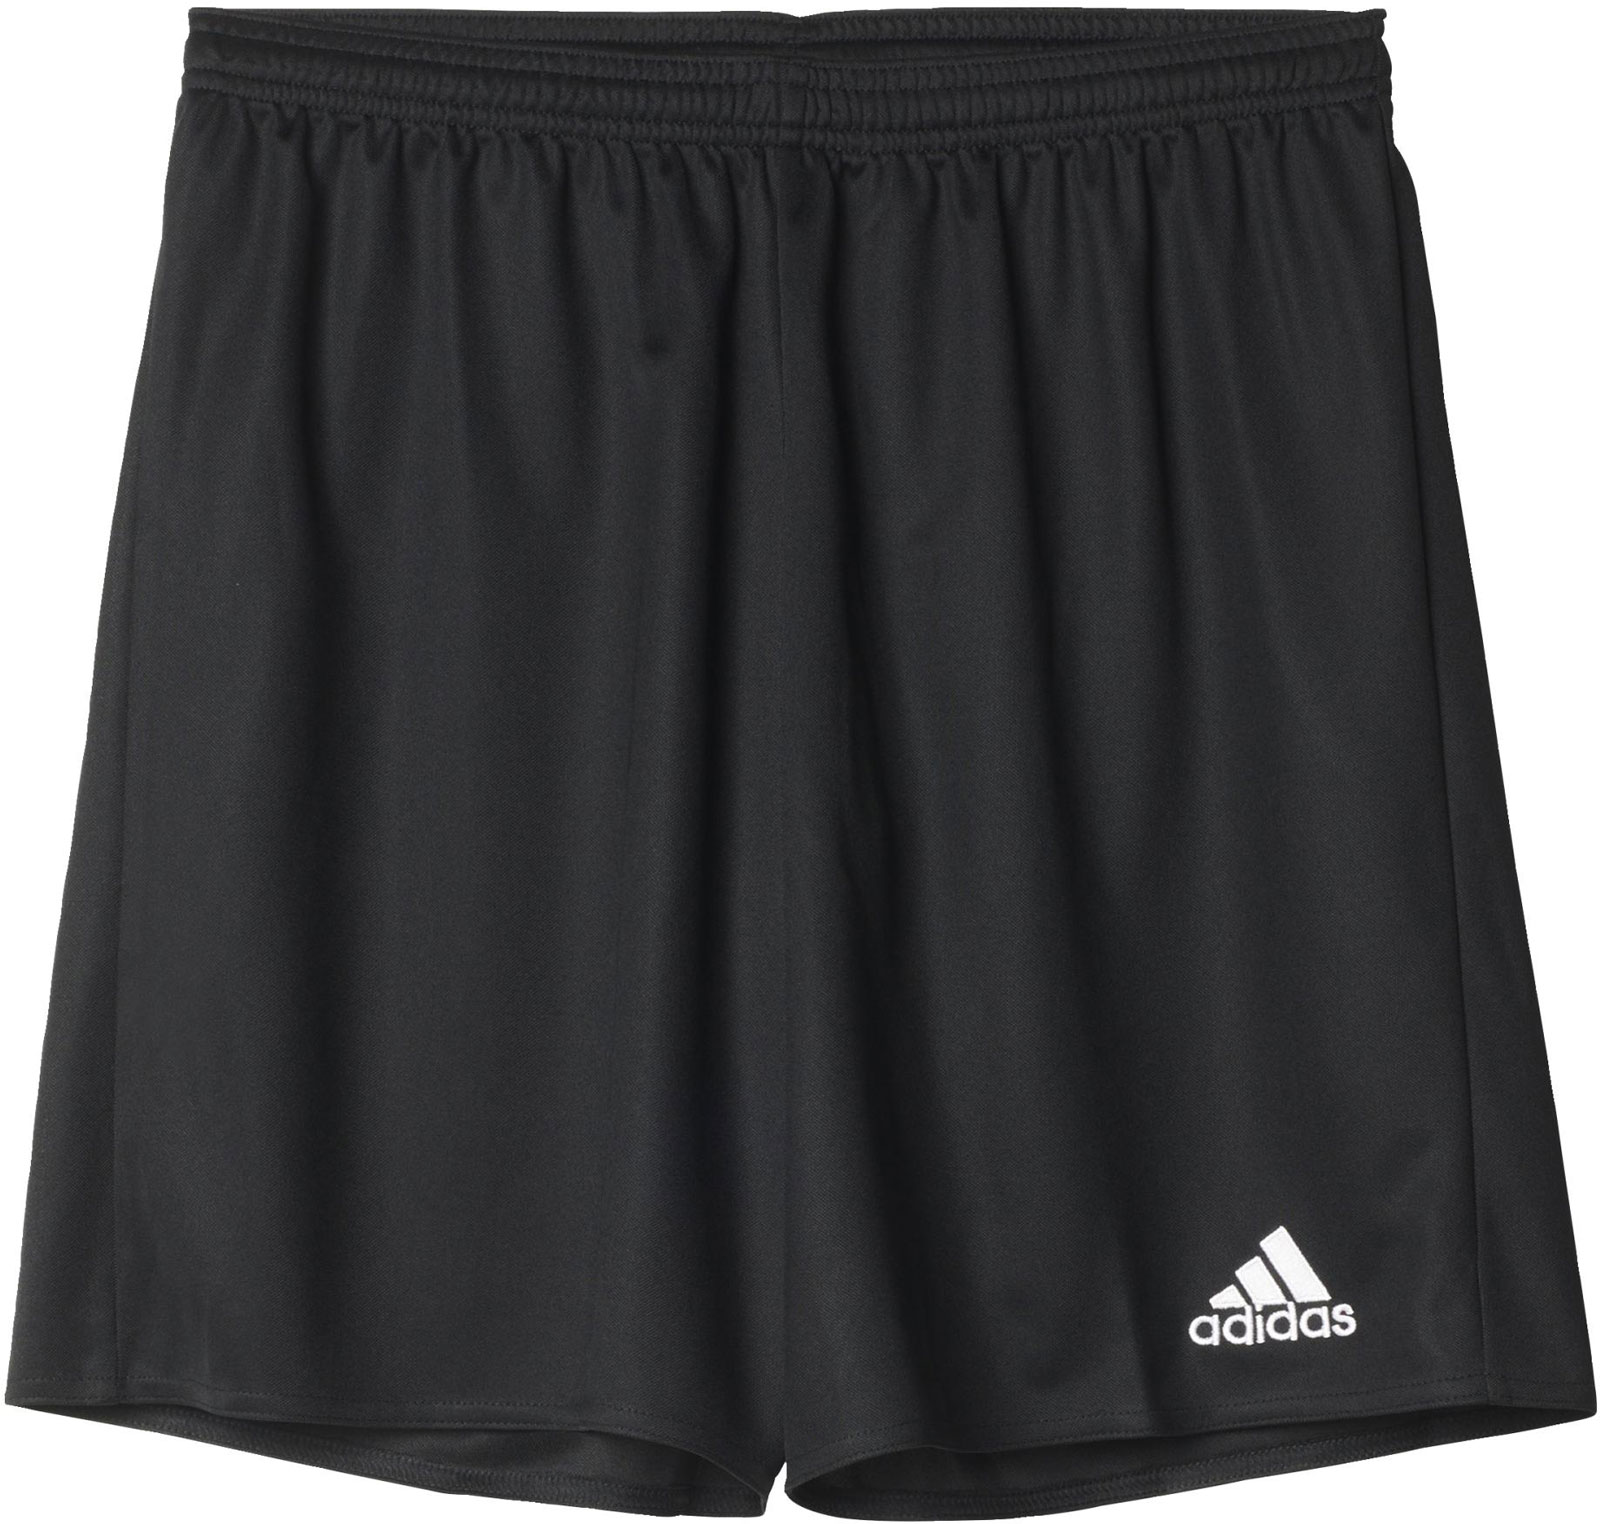 Junior football shorts